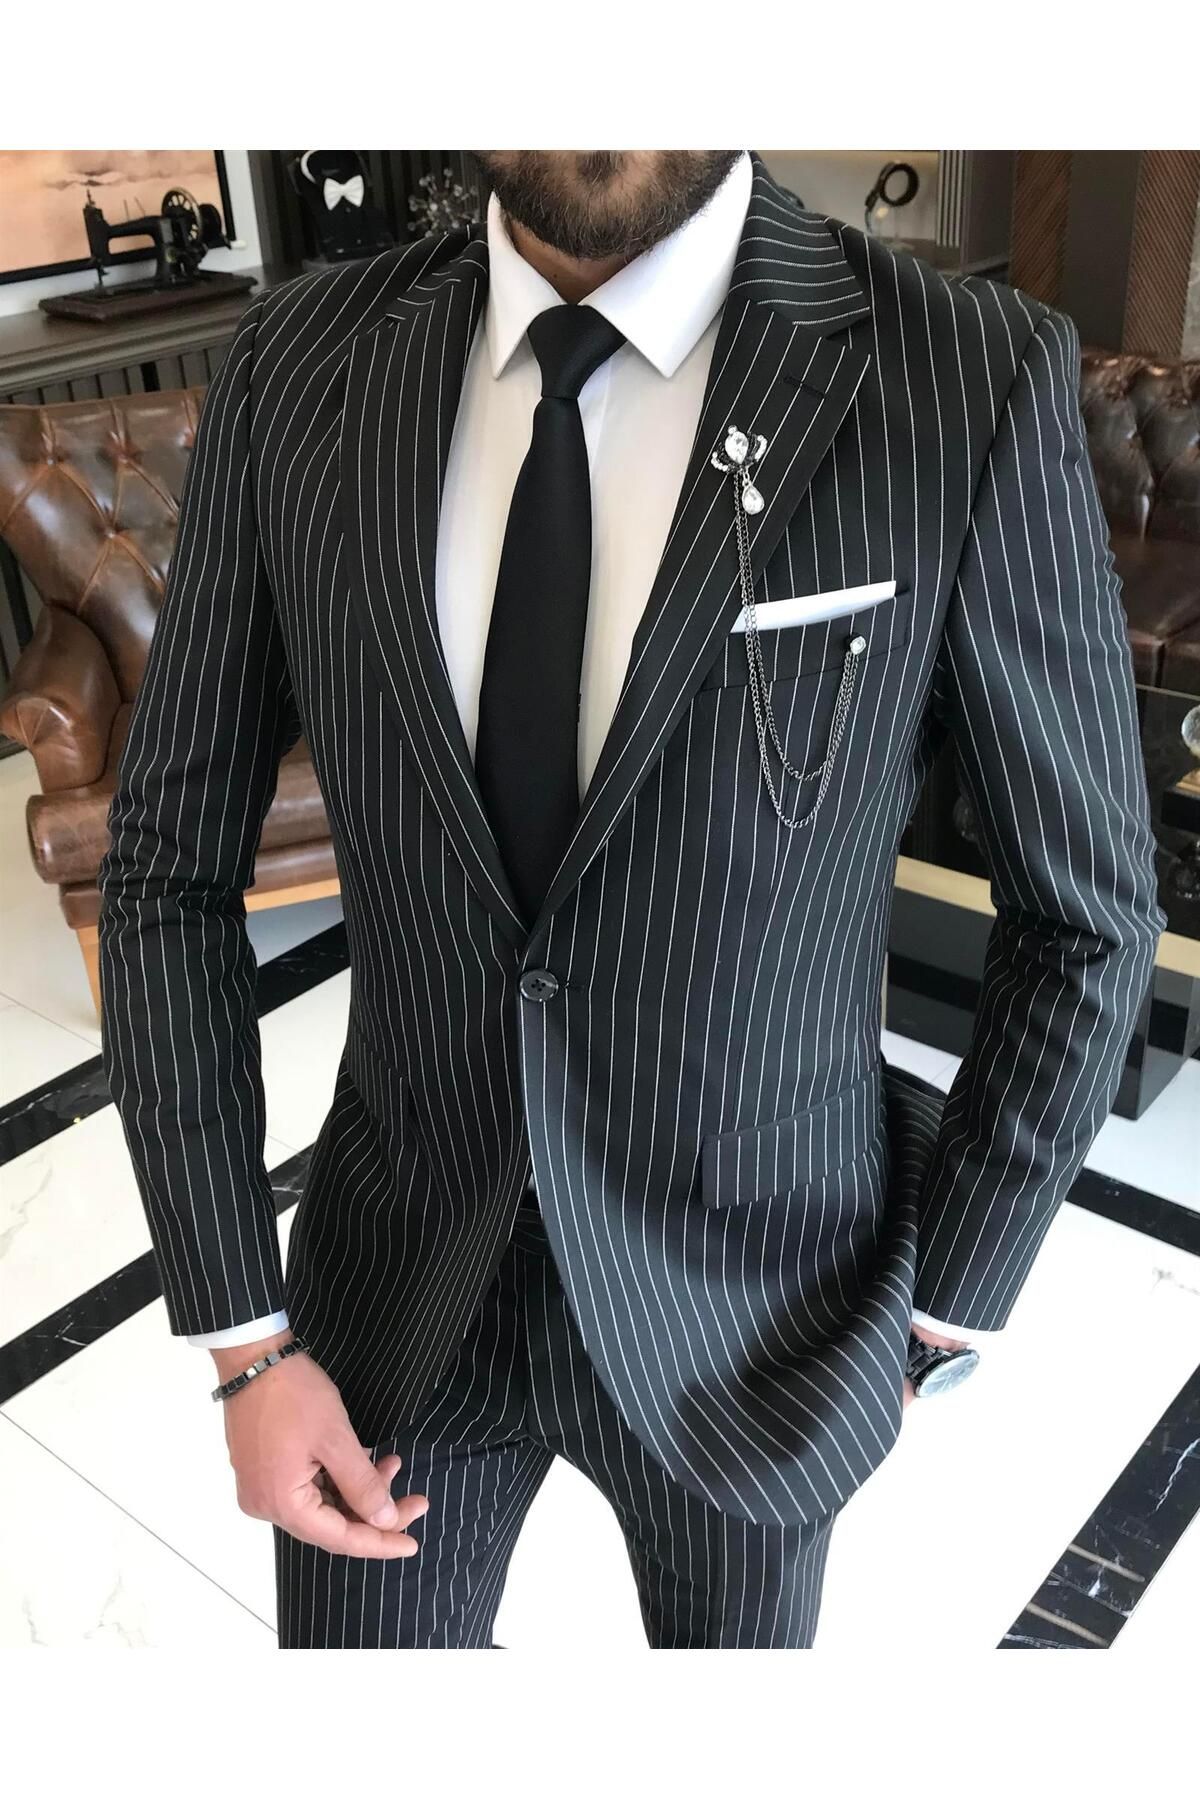 TerziAdemAltun İtalyan Stil Slim Fit Çizgili Erkek Ceket Pantolon Takım Elbise Siyah T4900